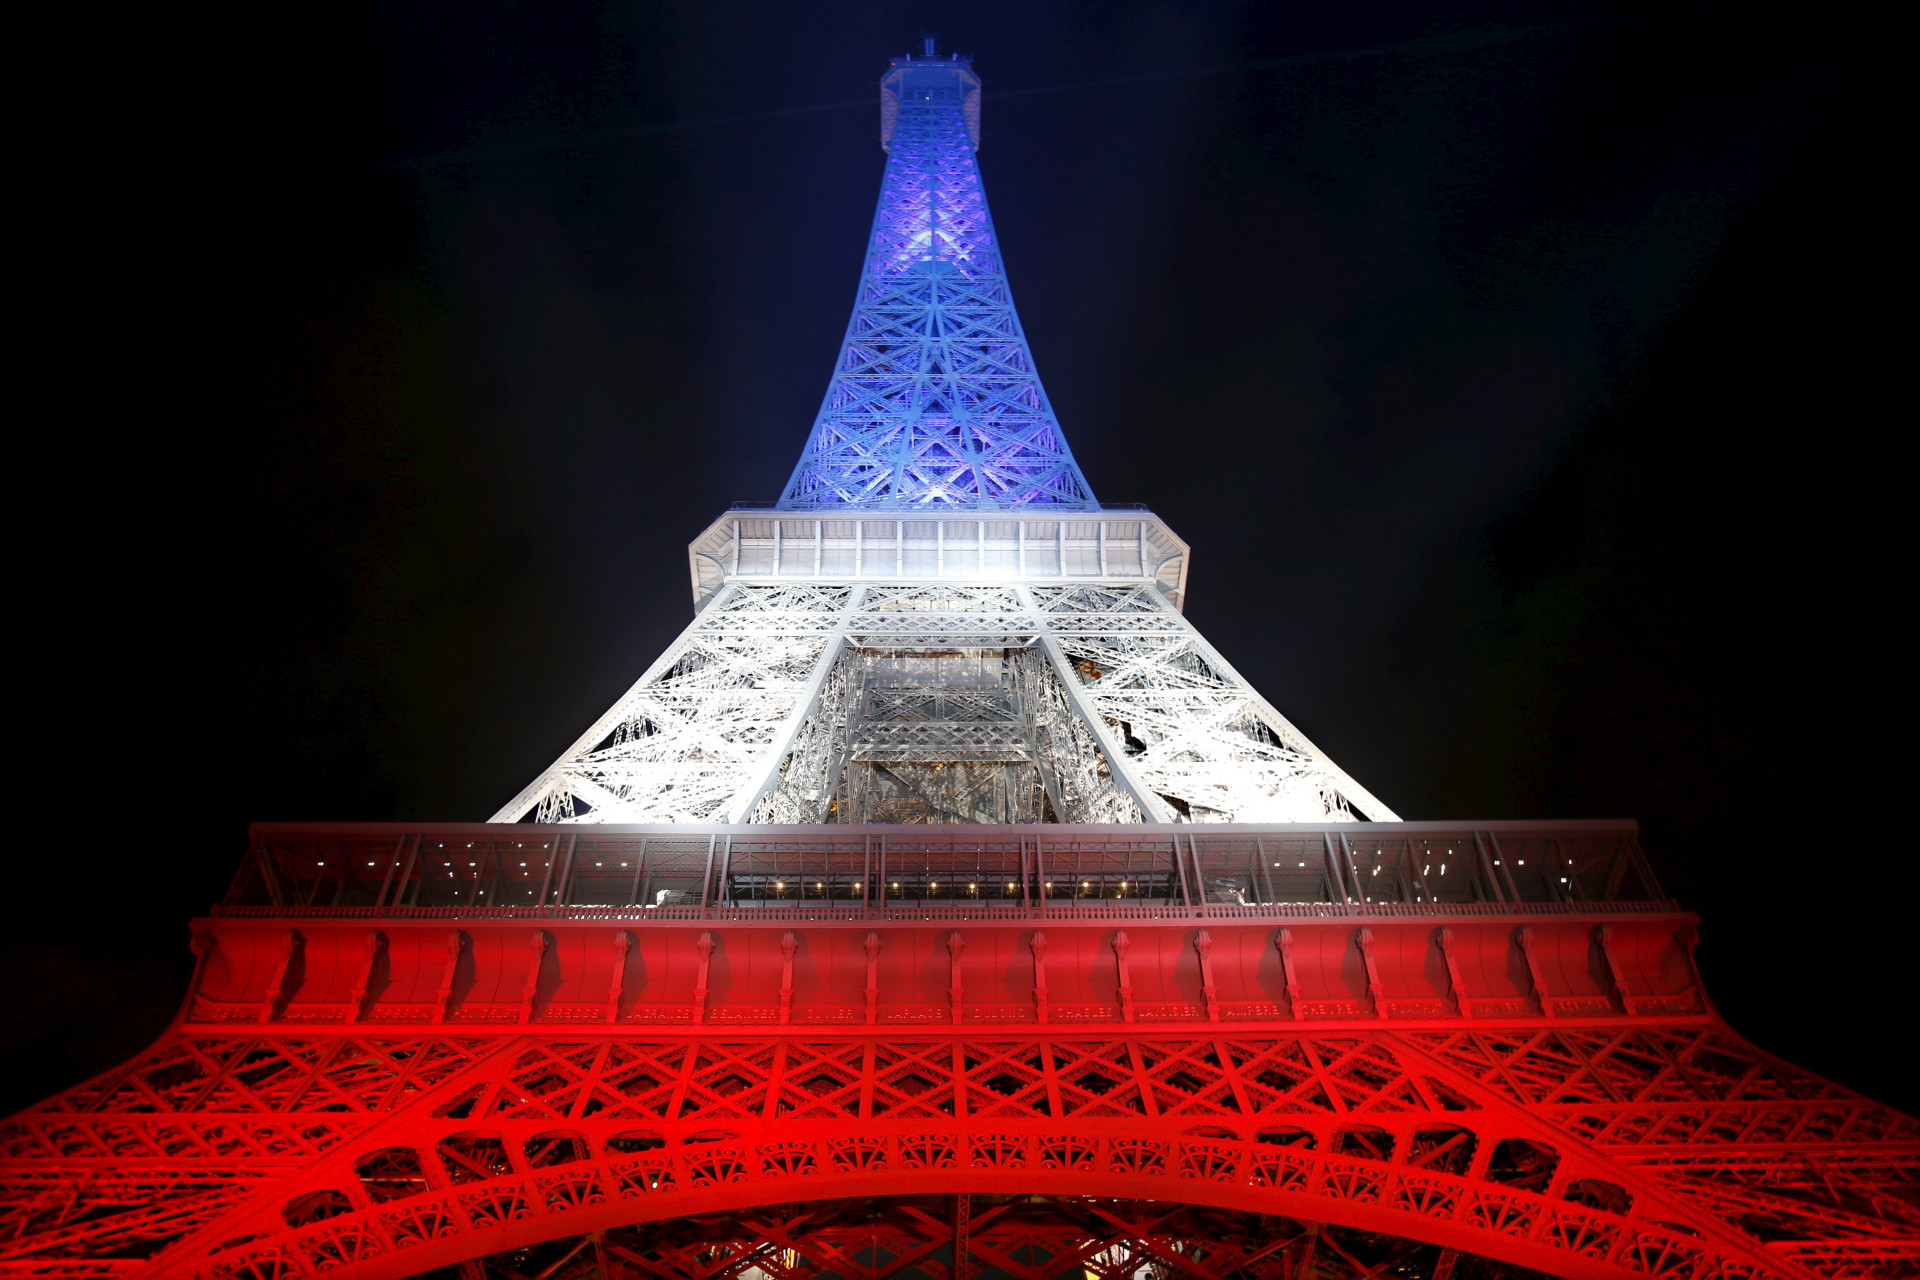 La France a vécu de graves événements ces dernières années. Pour rendre hommage aux victimes des attentats contre Charlie Hebdo puis du 13 novembre, la Tour Eiffel avait été illuminée aux couleurs de la France.